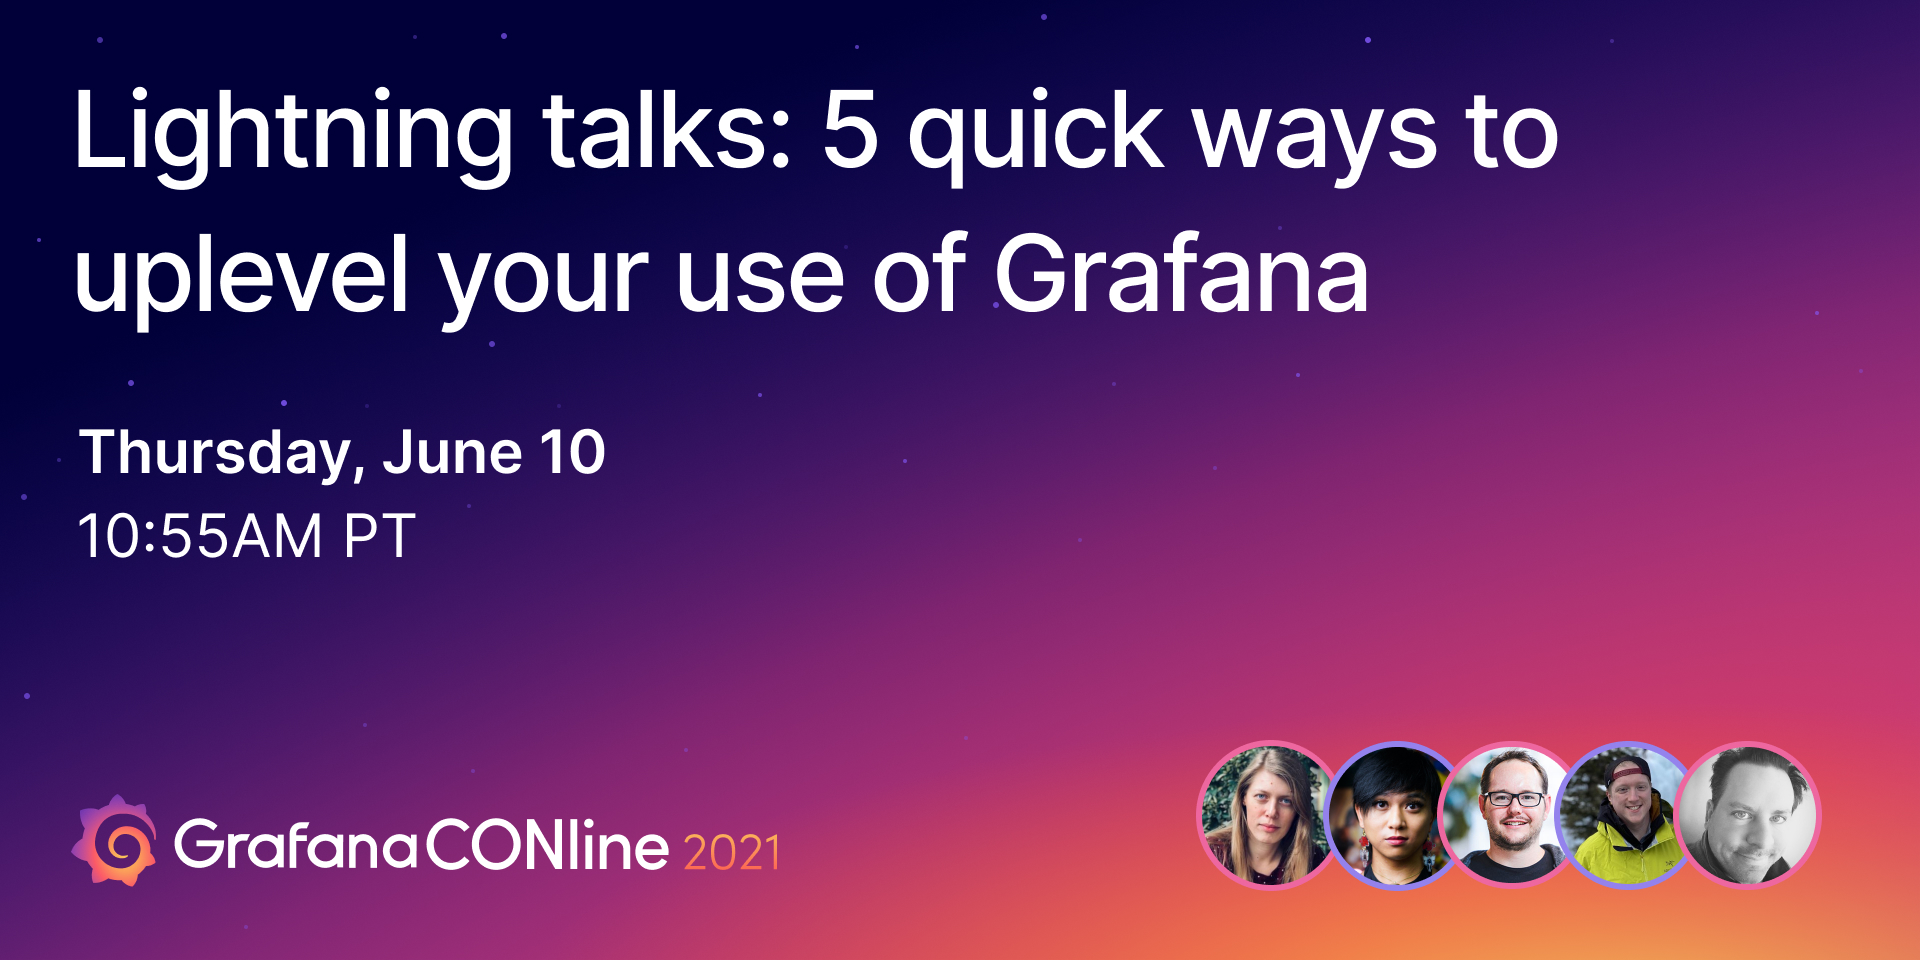 闪电对话:5种快速方法提升你对Grafana的使用